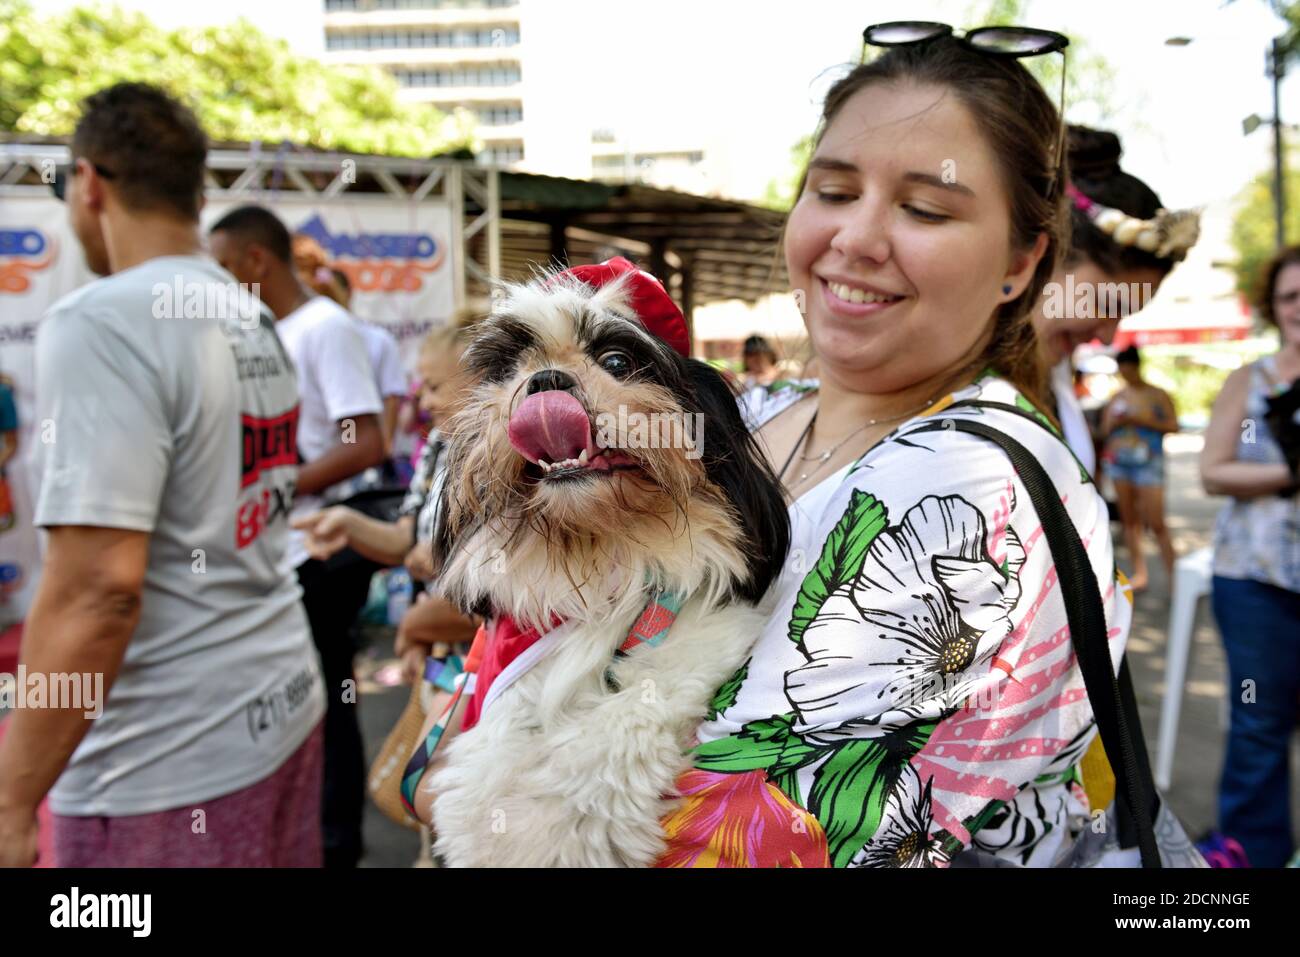 Brasile, Rio de Janeiro, 15 febbraio 2020: Festa per animali domestici. I proprietari di cani si incontrano per celebrare il Carnevale con i loro amati amici a quattro zampe. Foto Stock